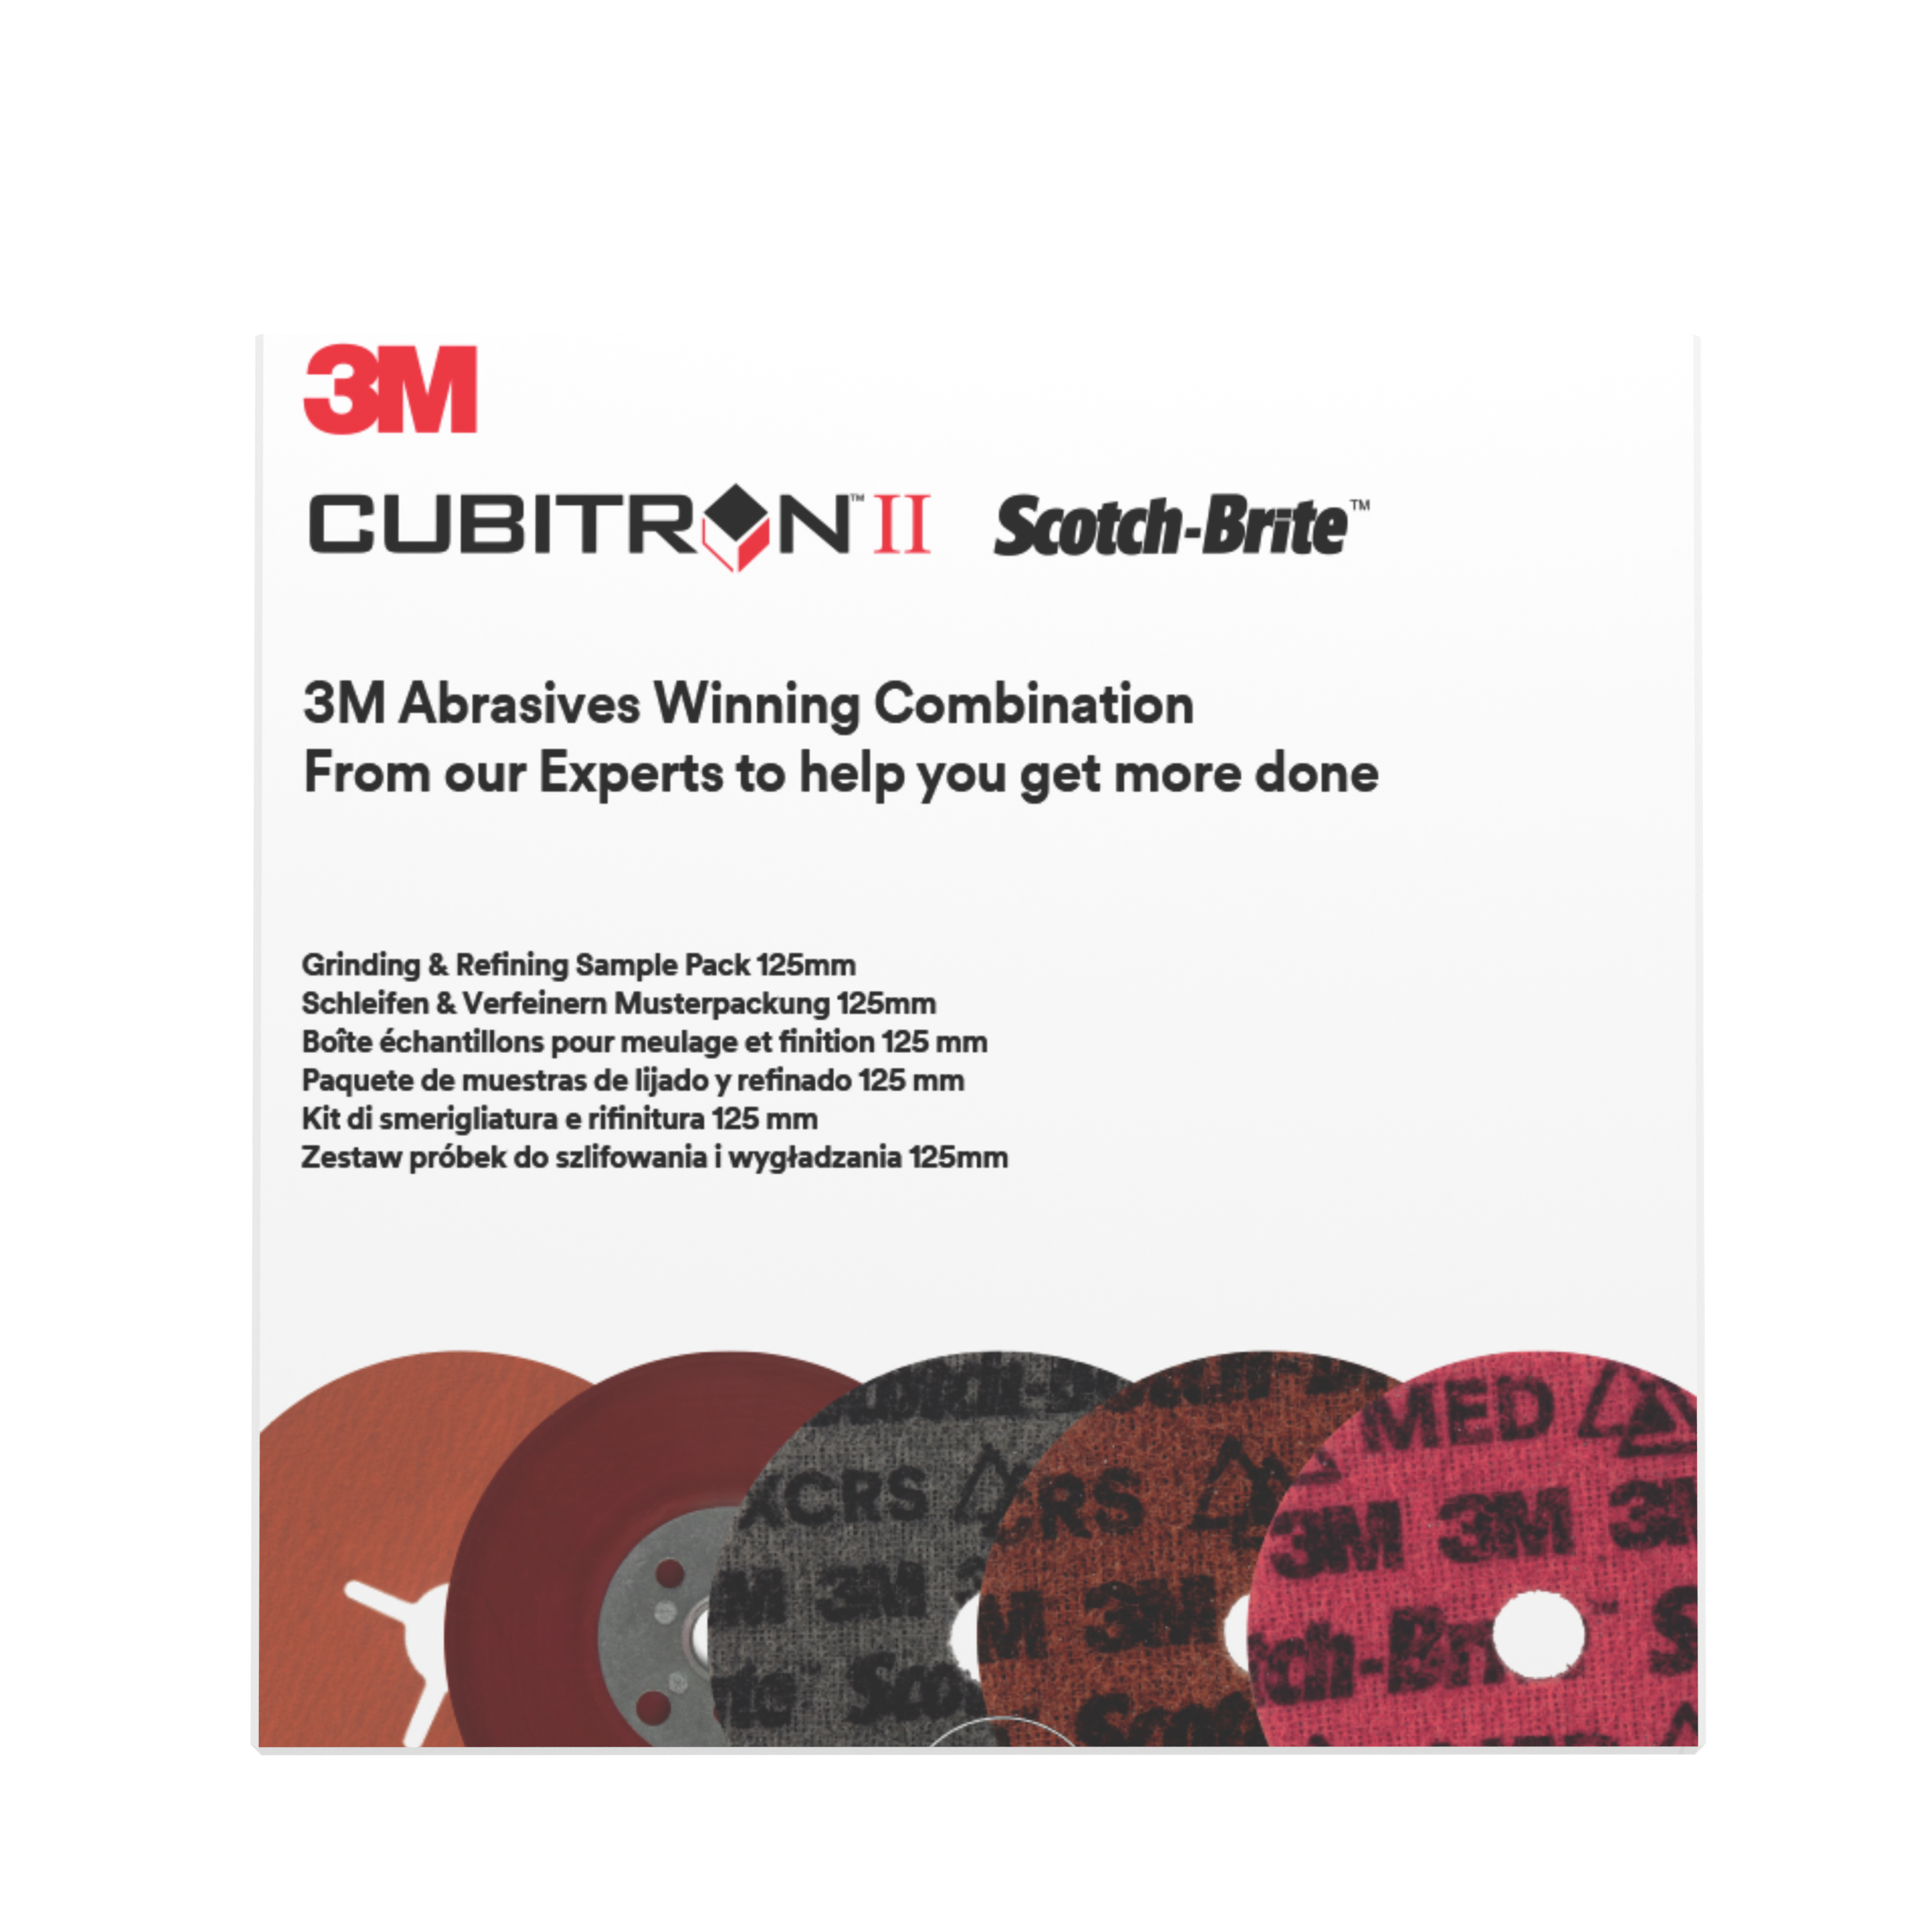 3M™ | Grinding & Refining Kit | enthält 125mm 787C Fiber- und PN-DH Vliesscheibe, mit flachem Stützteller Muster